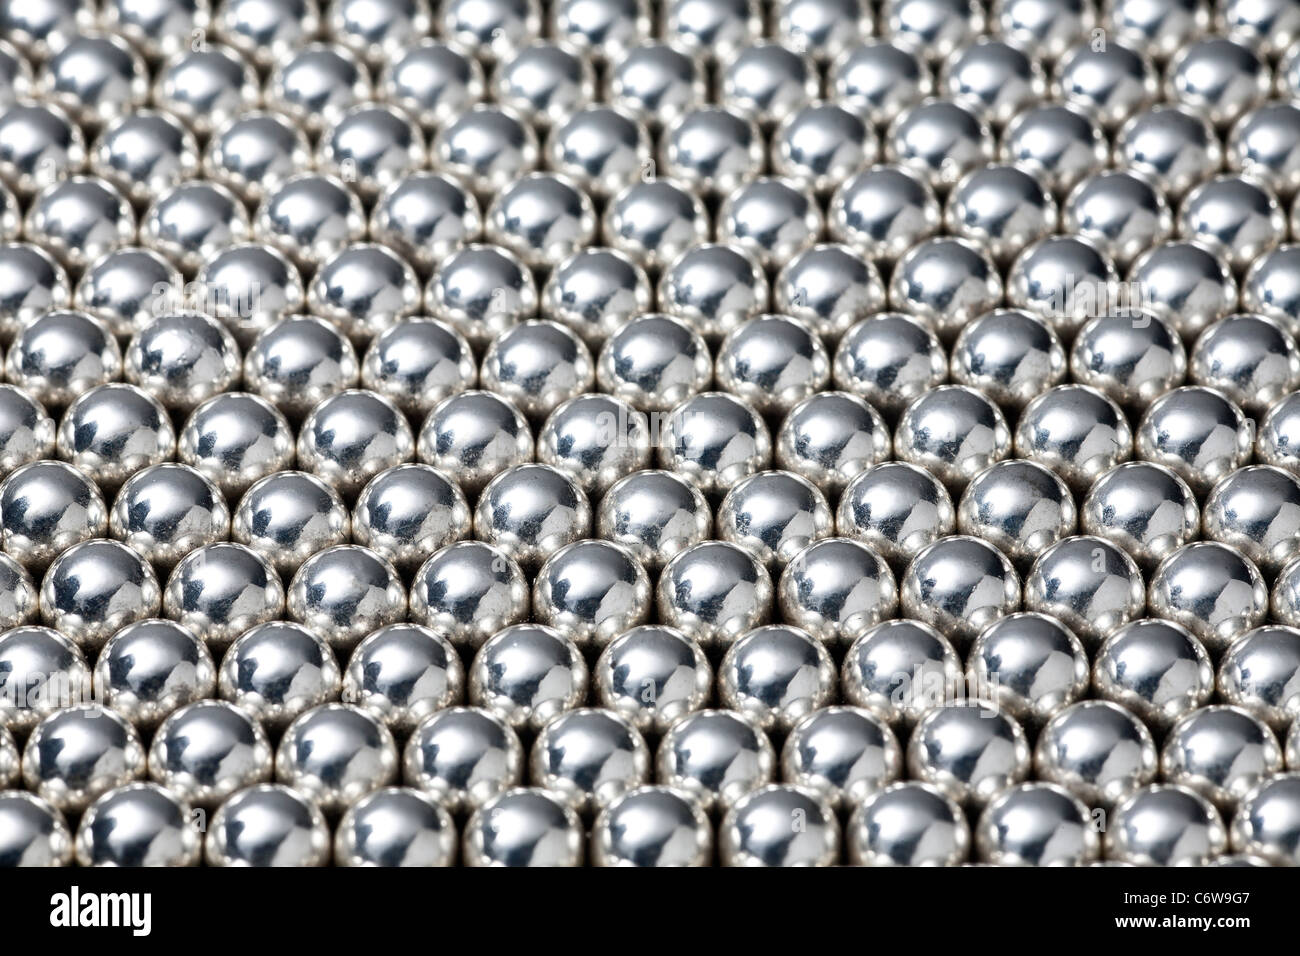 A shot in the studio of lined up steel balls. Billes d'acier alignées. Prise de vue en studio. Stock Photo